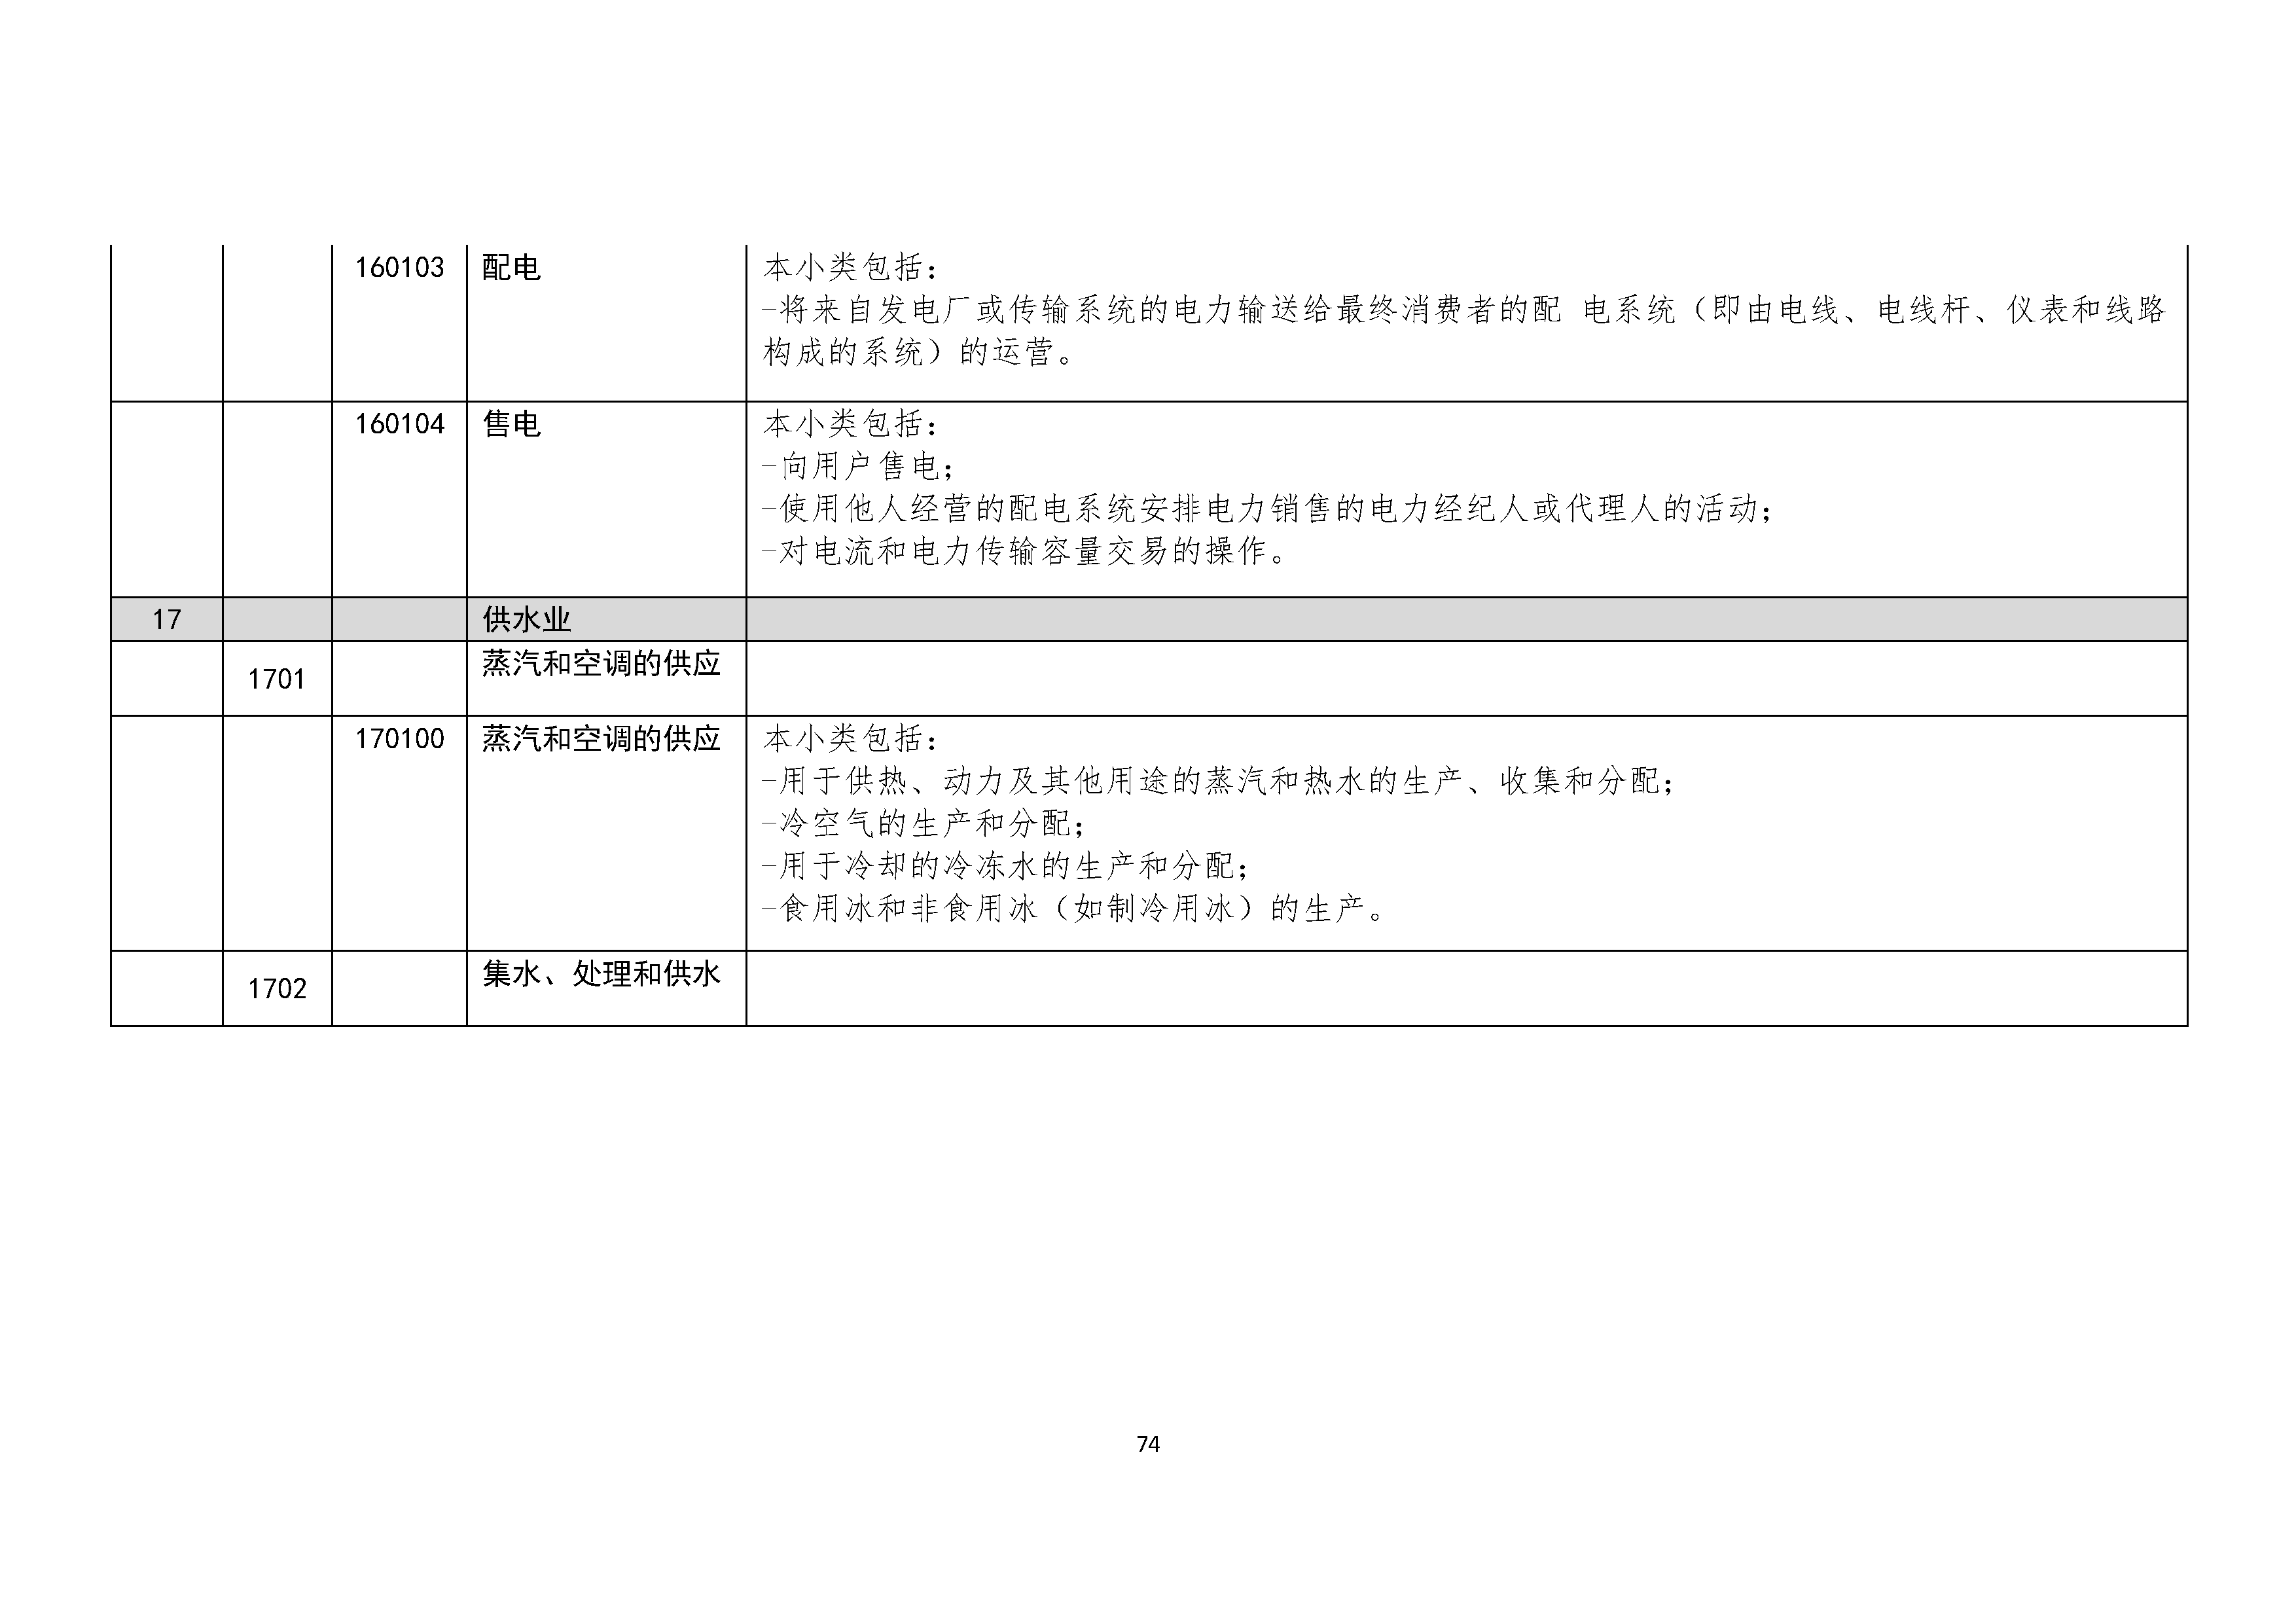 B.6《中国核能行业协会供应商评价供应商分类及产品专业范围划分规定》_页面_075.png